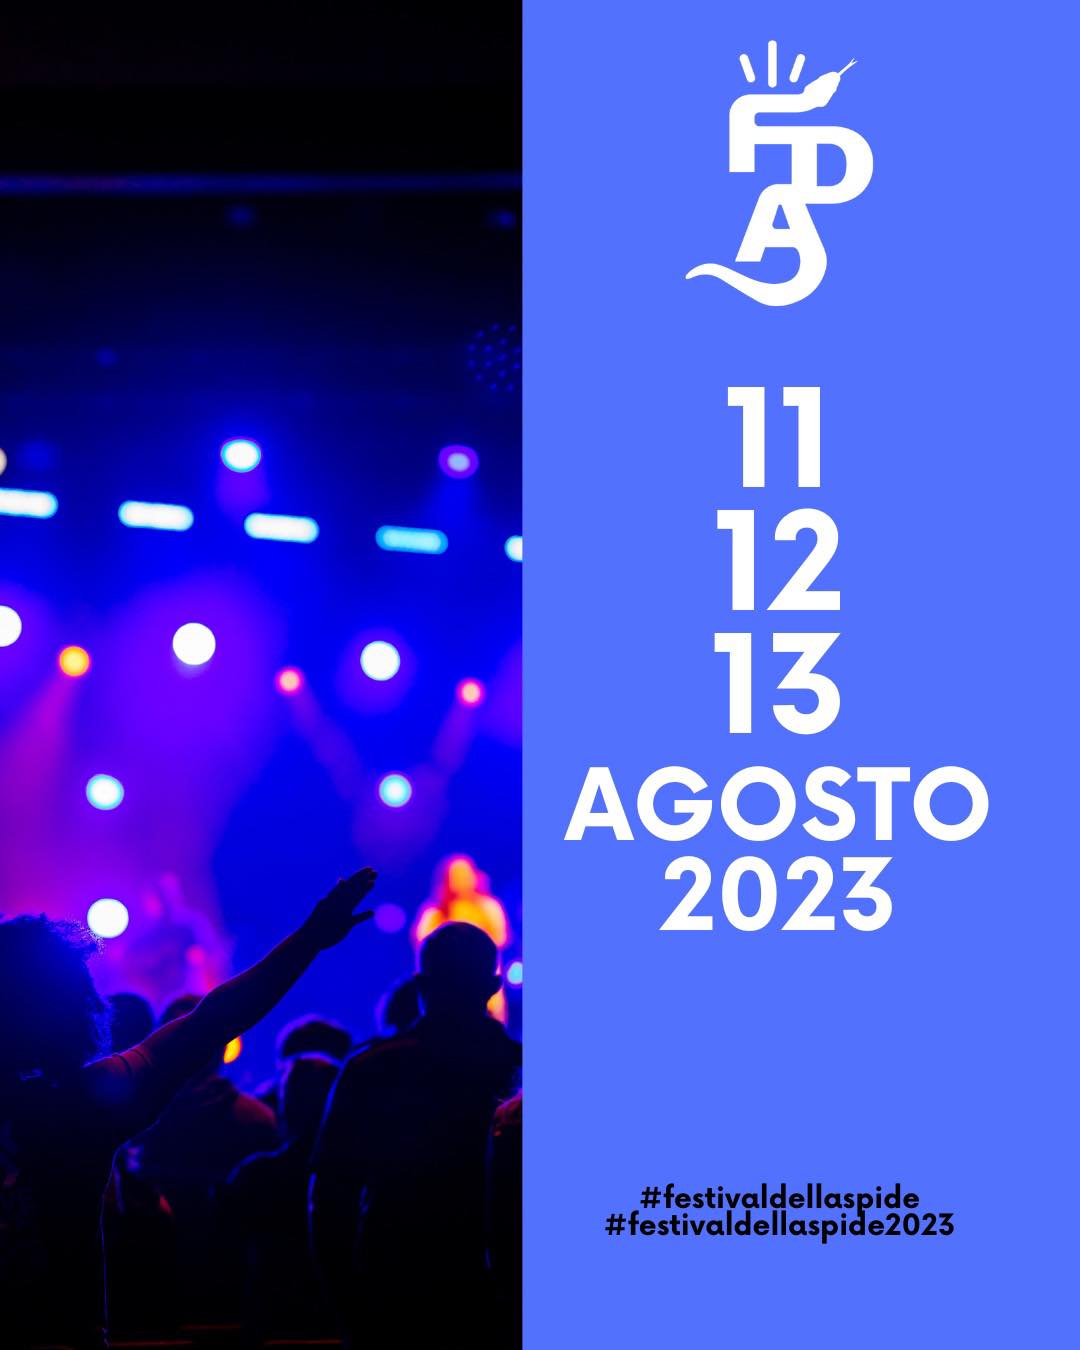 Festival-Dell-Aspide-2023-Roccadaspide-Cilento-evento